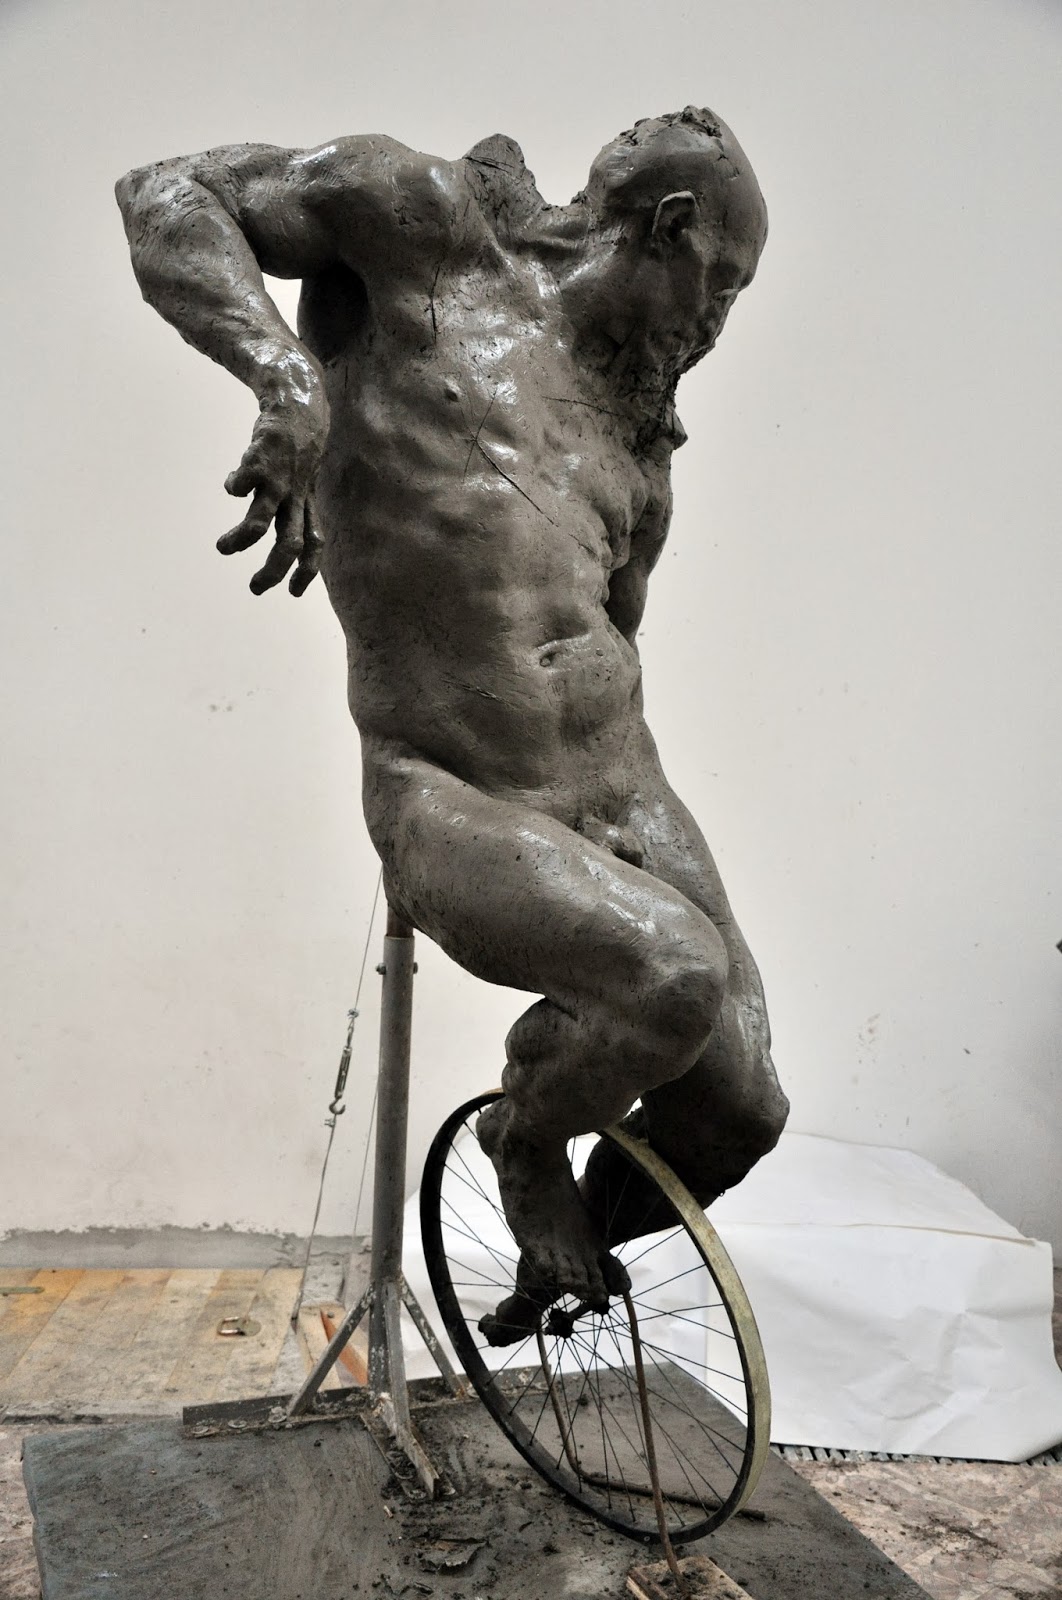 Grzegorz Gwiazda – sculpture cyclist in progress